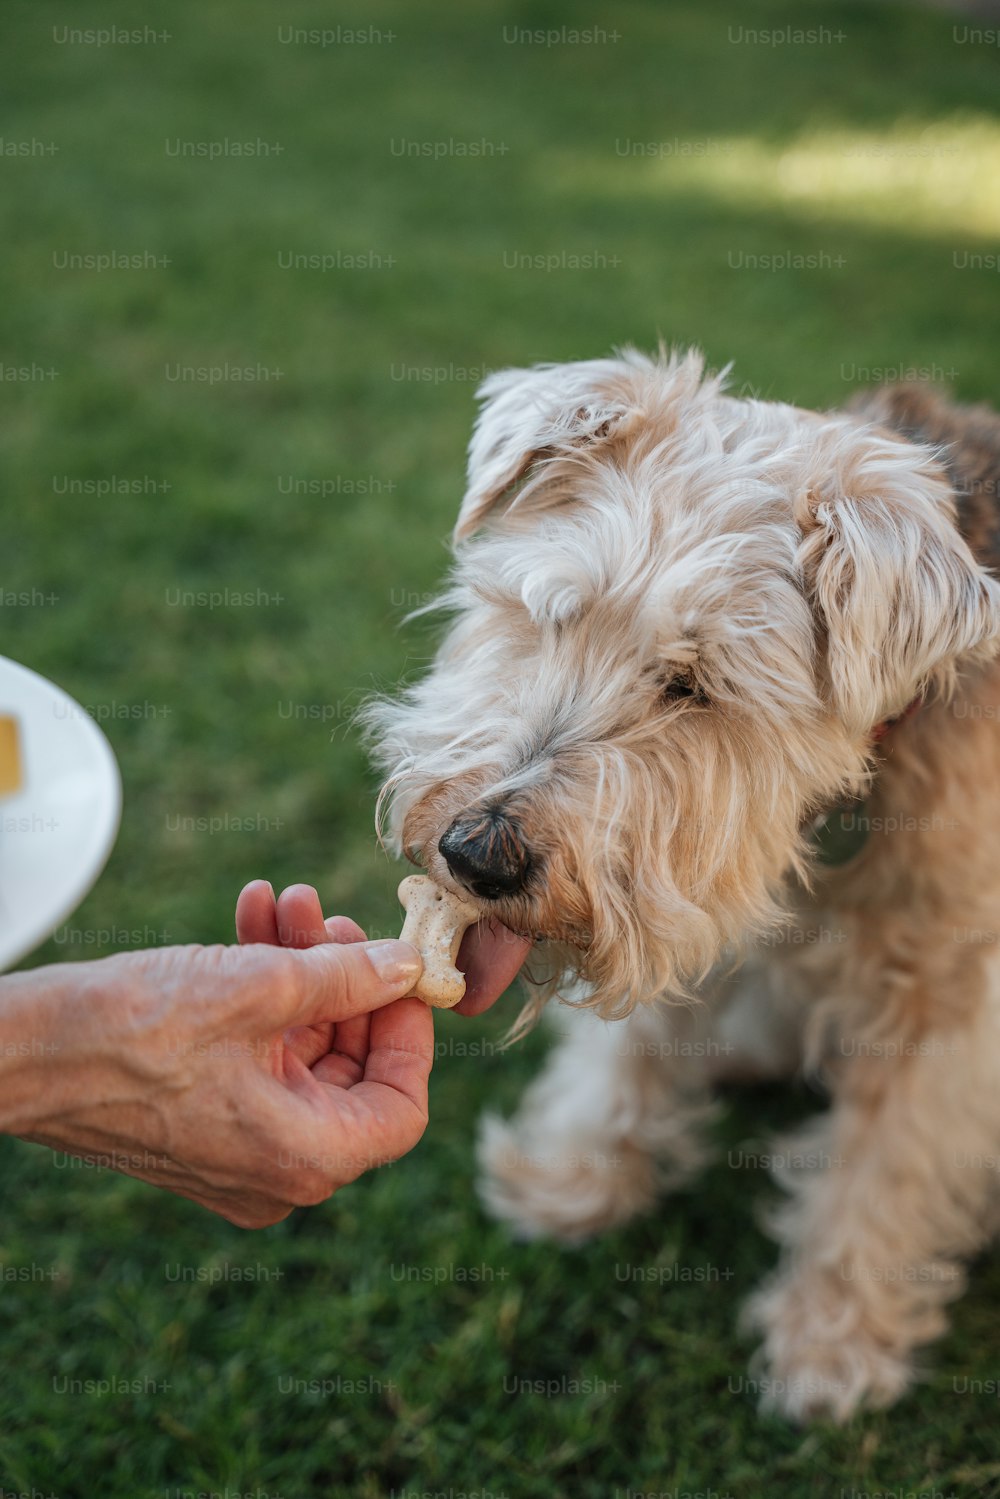 uma pessoa alimentando um cão com um pedaço de comida